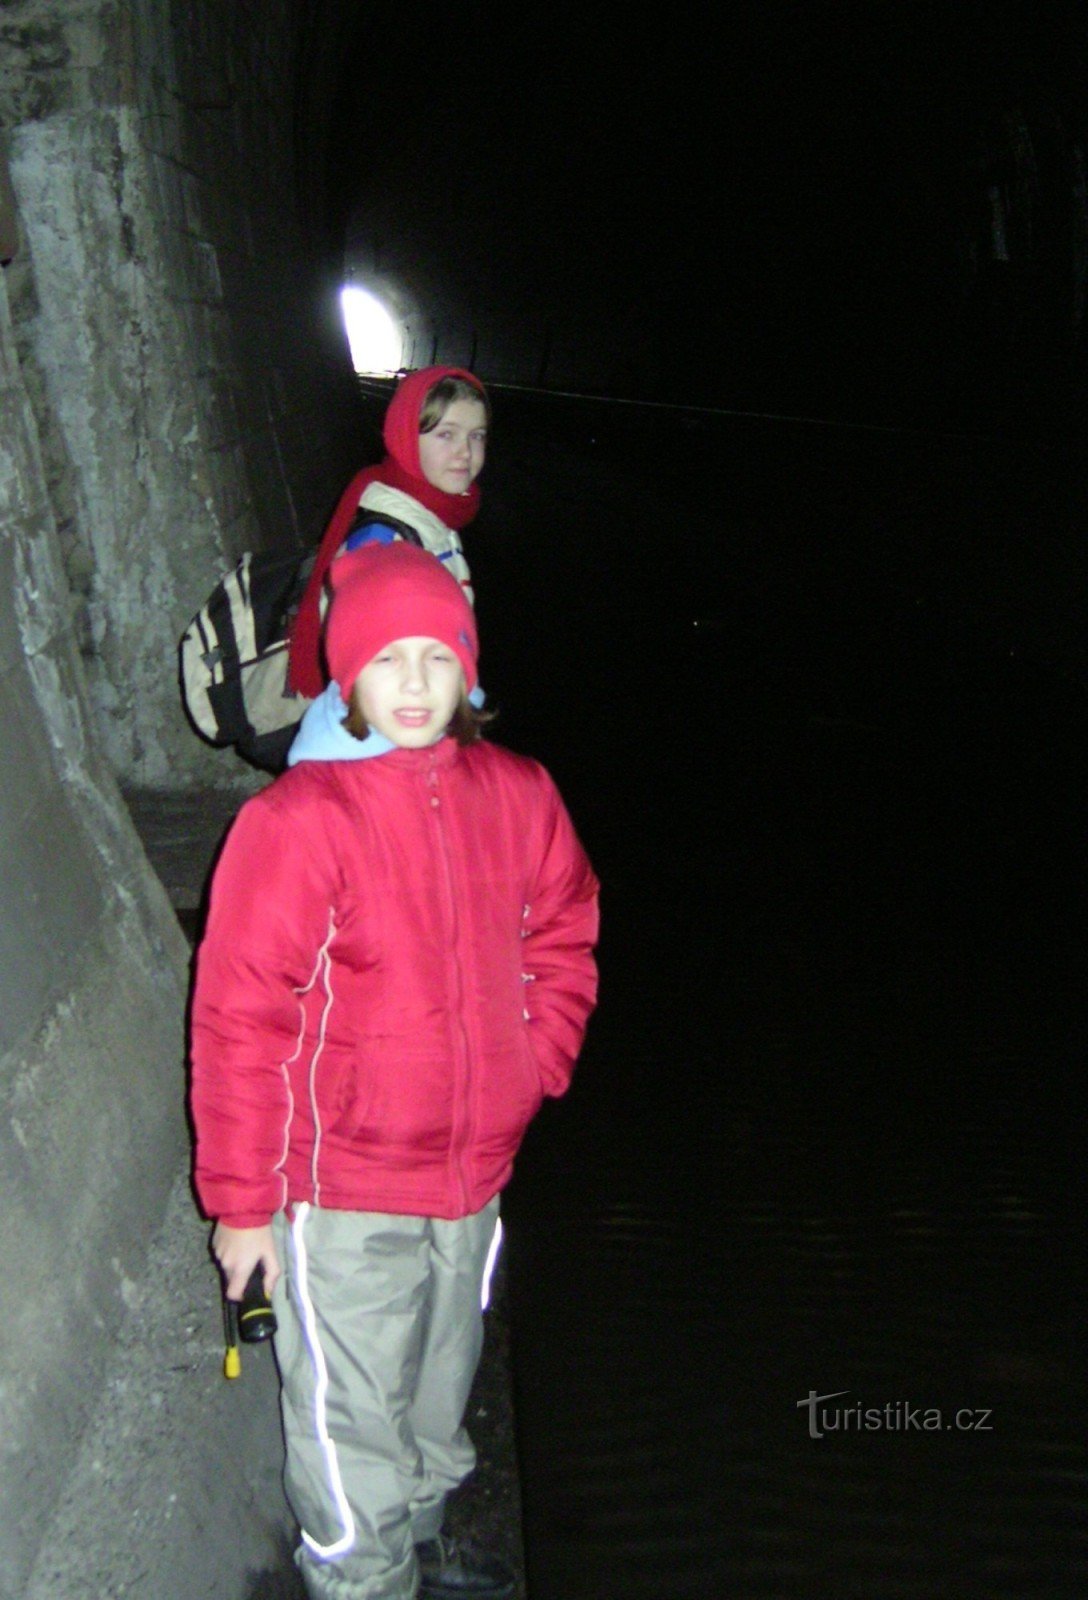 Malá Chuchle - o potecă întunecată printr-un tunel feroviar